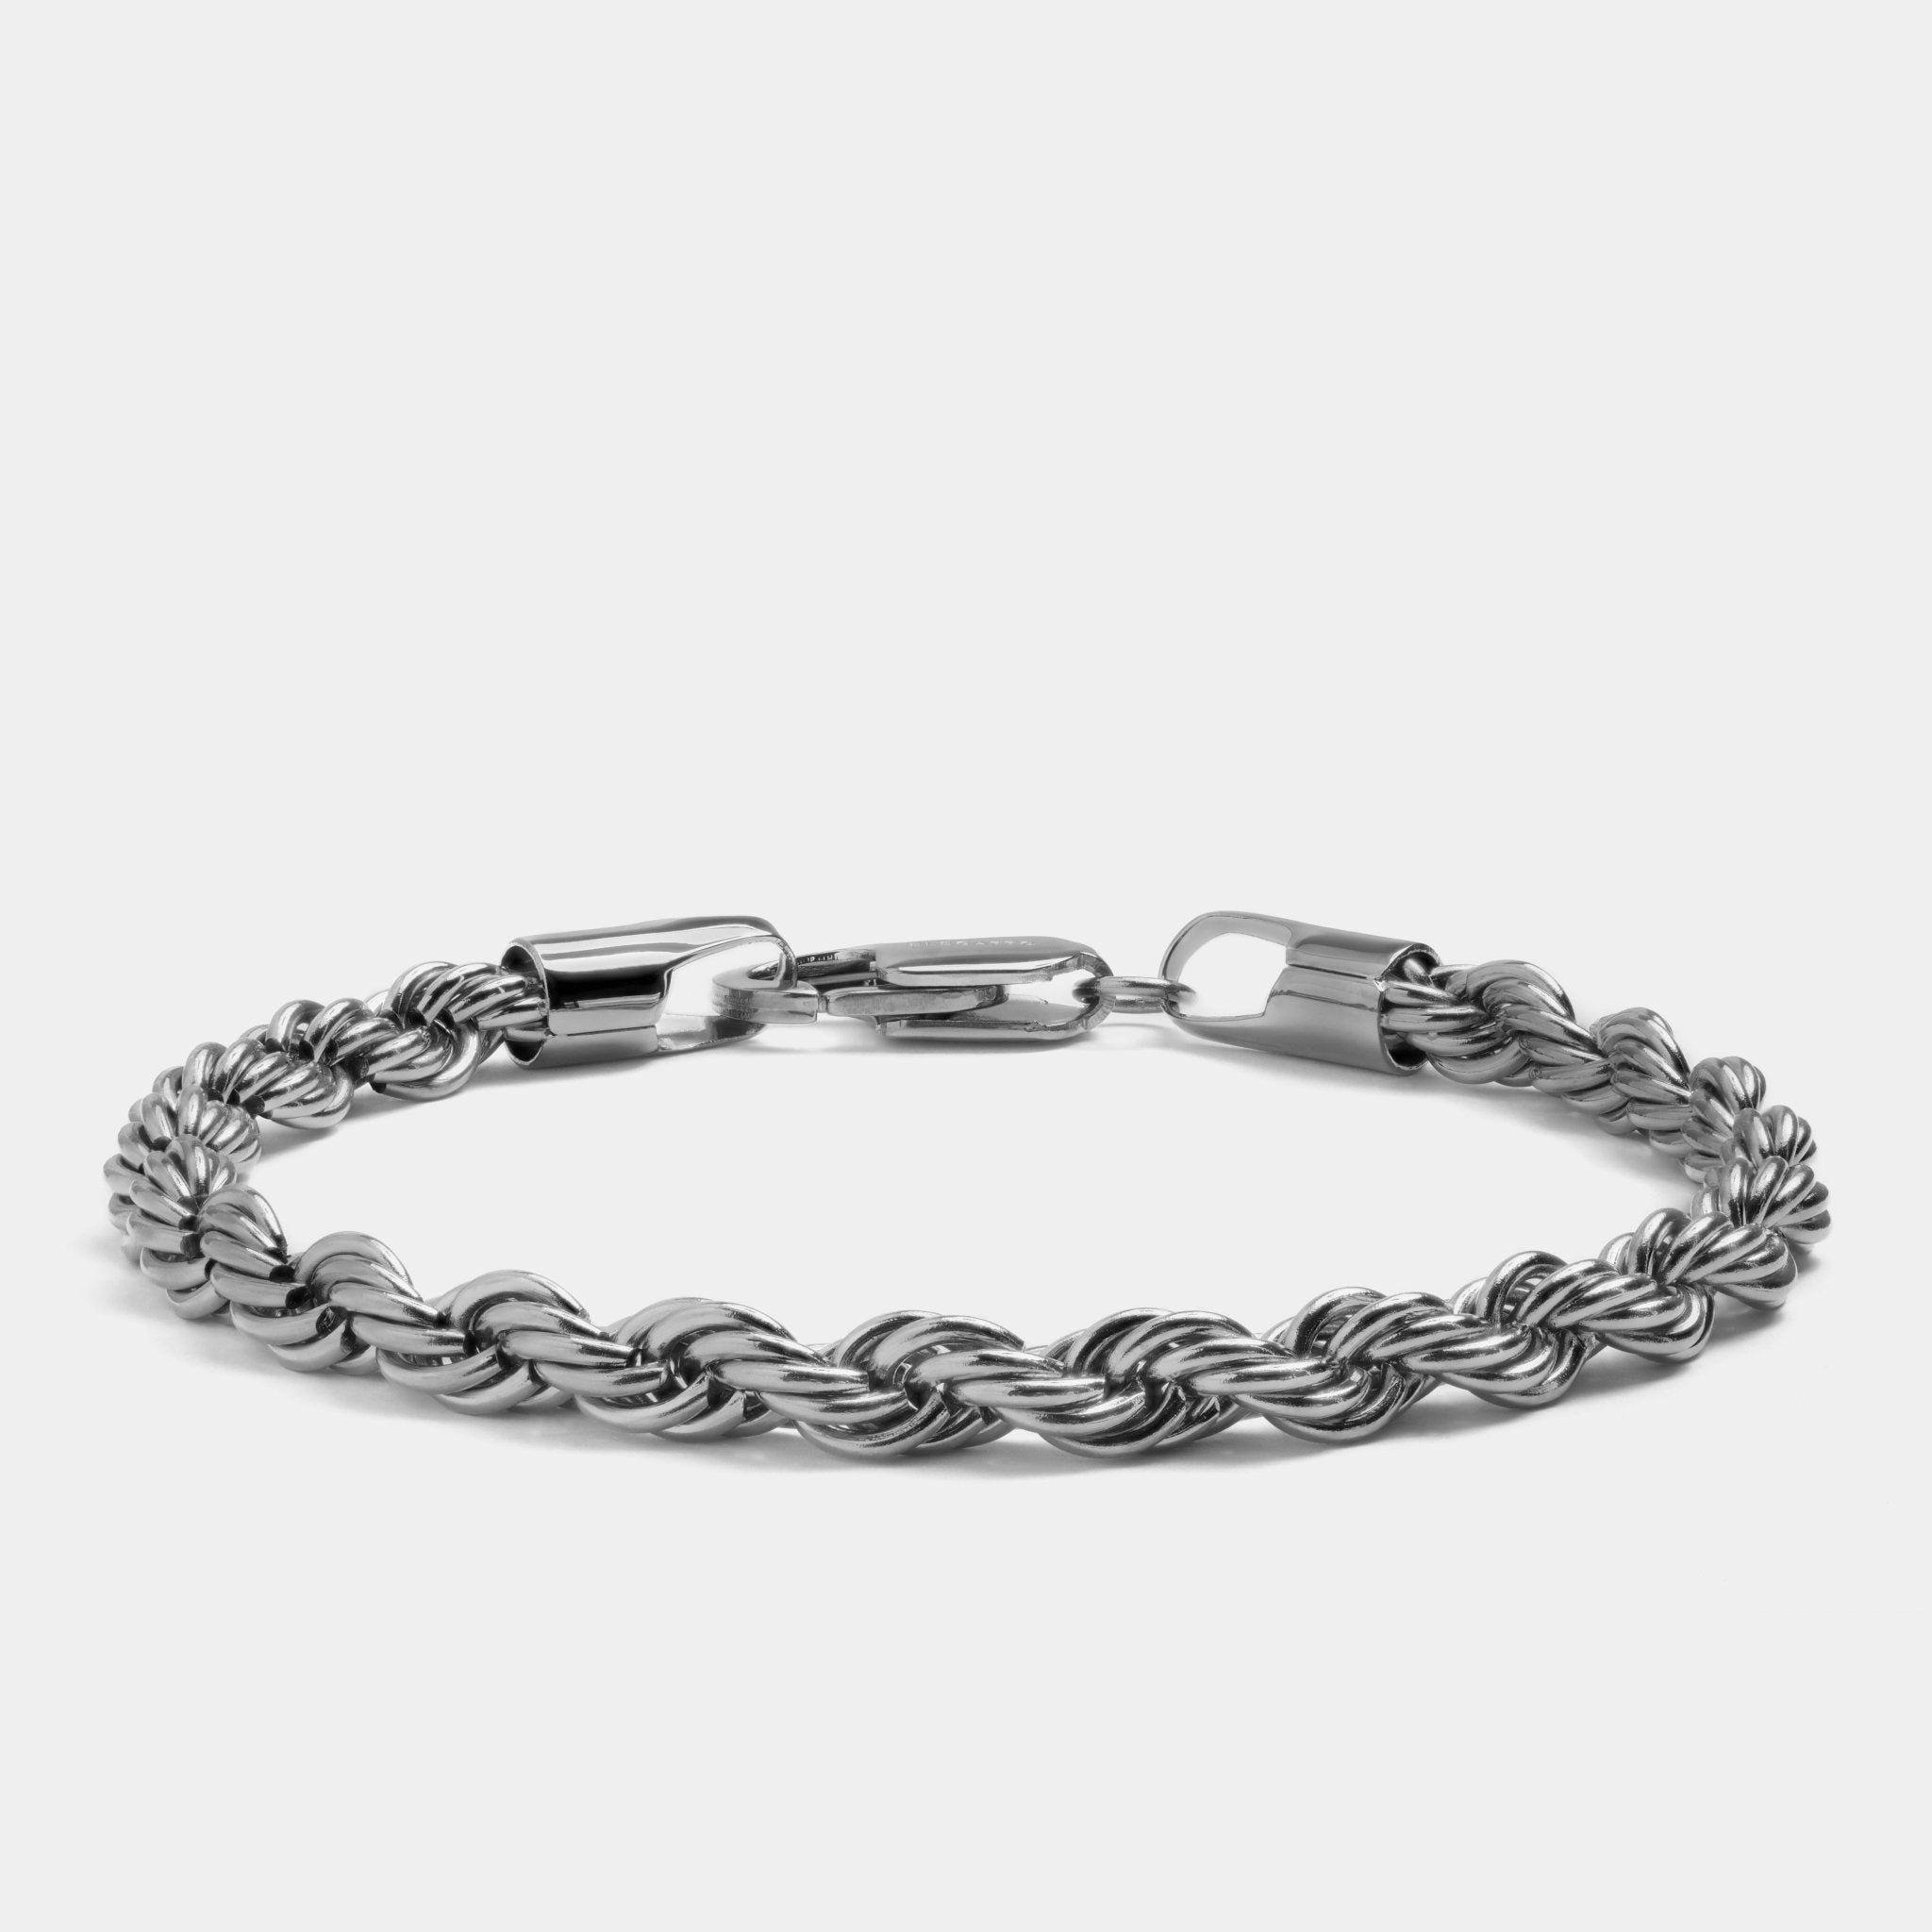 Rope Chain Bracelet Silver - Elegatto